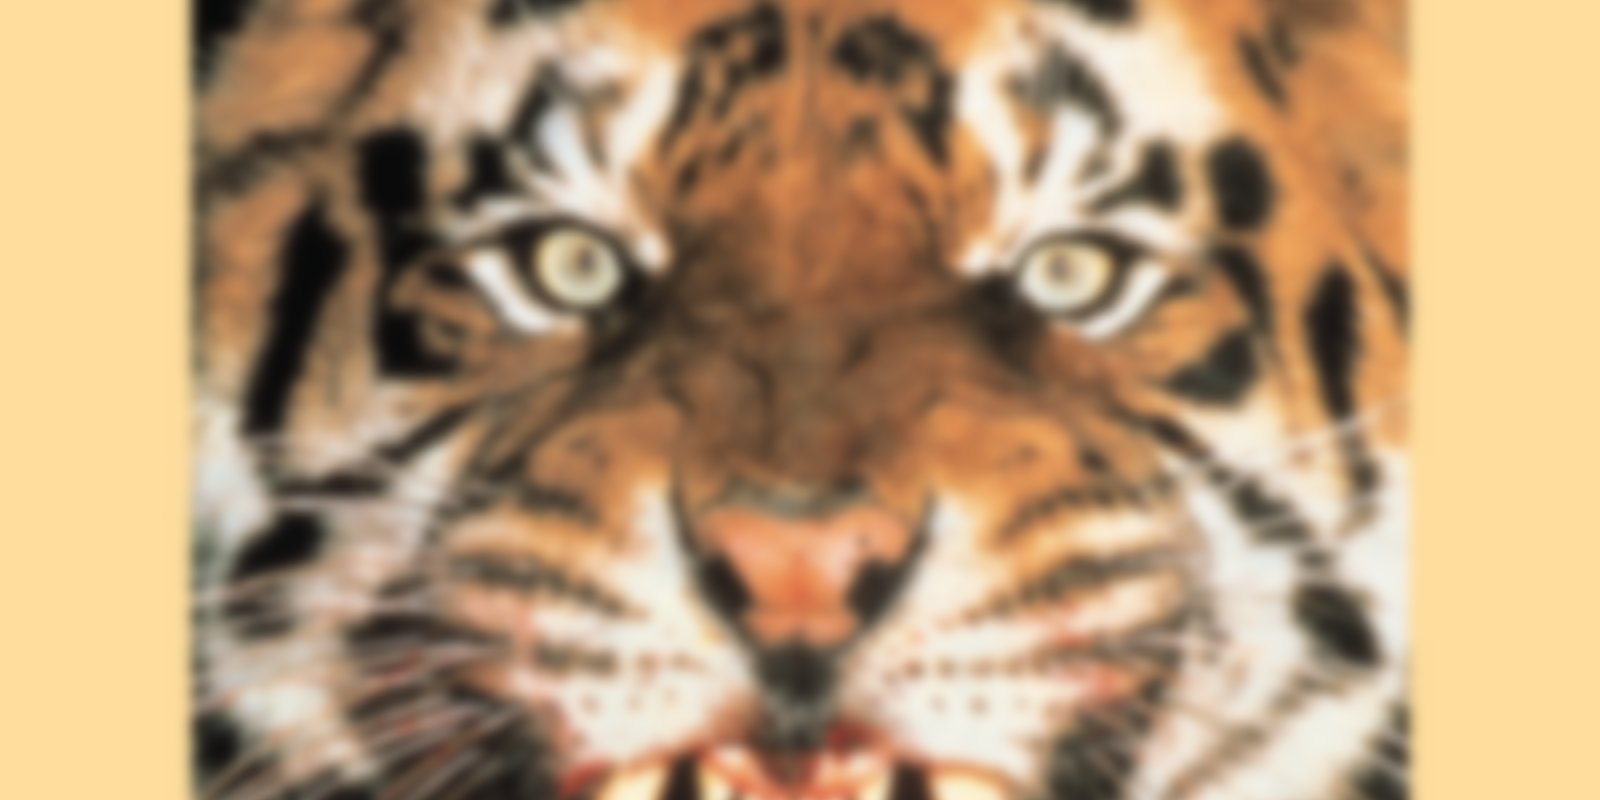 Raubtiere - Tiger